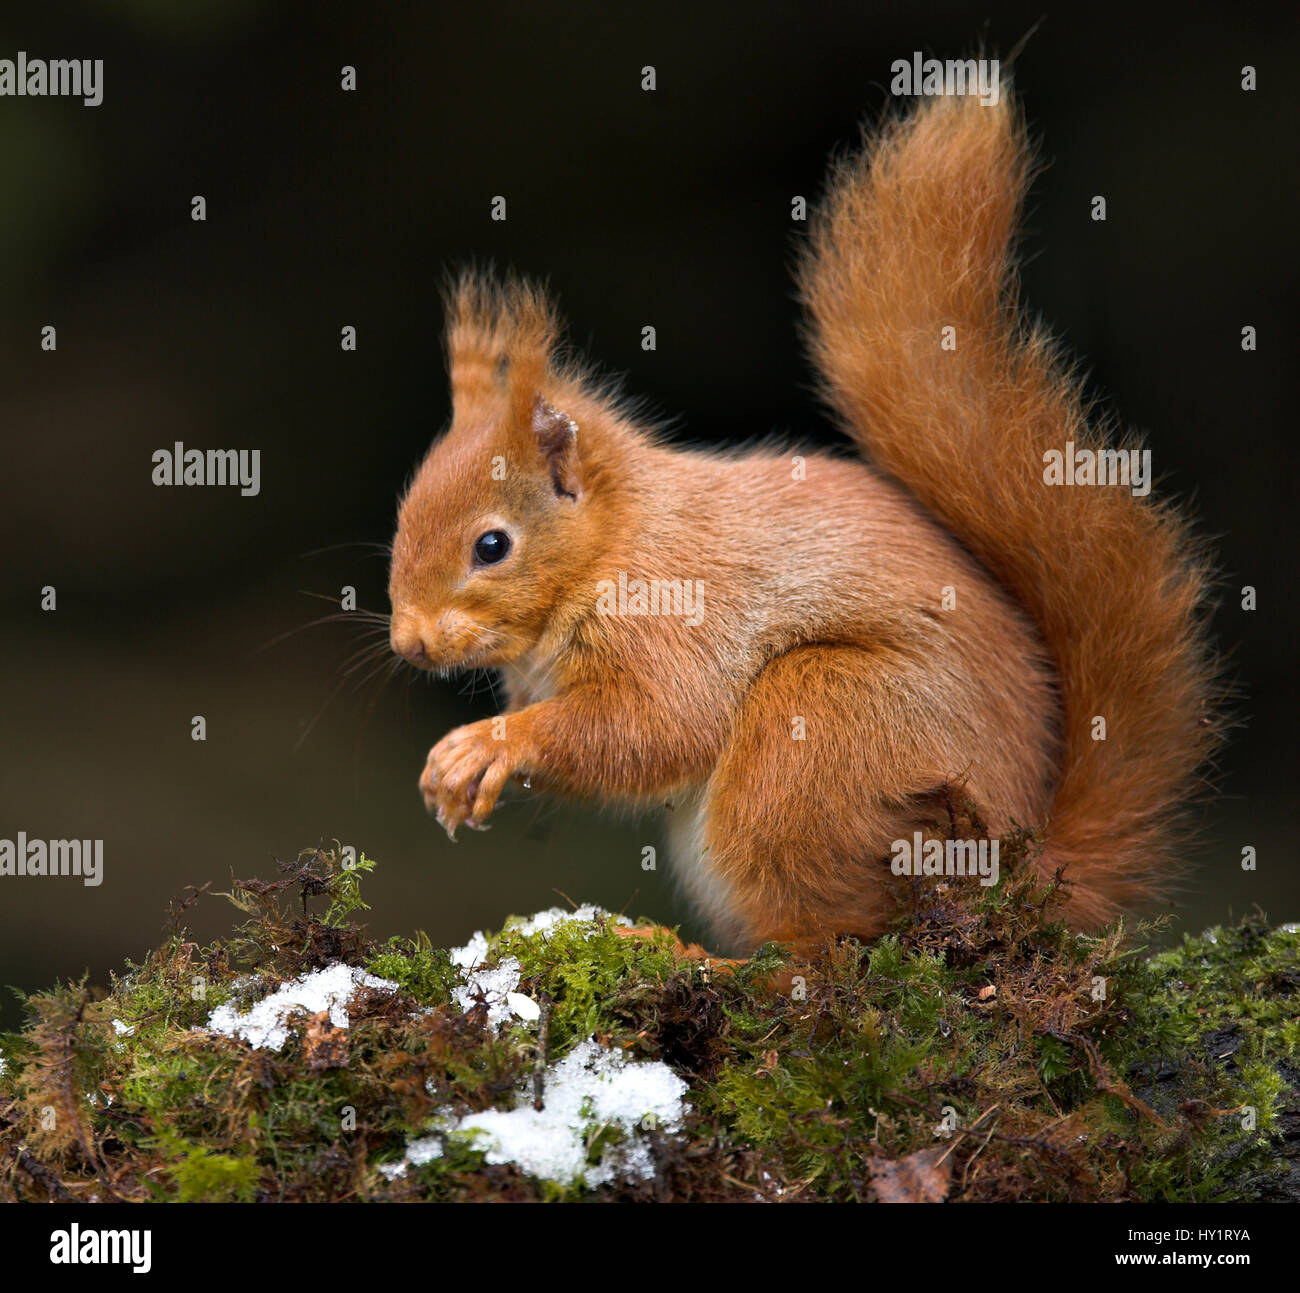 Red scoiattolo (Sciurus vulgaris) seduti sul muschio coperto il ramo, Scotland, Regno Unito. Foto Stock